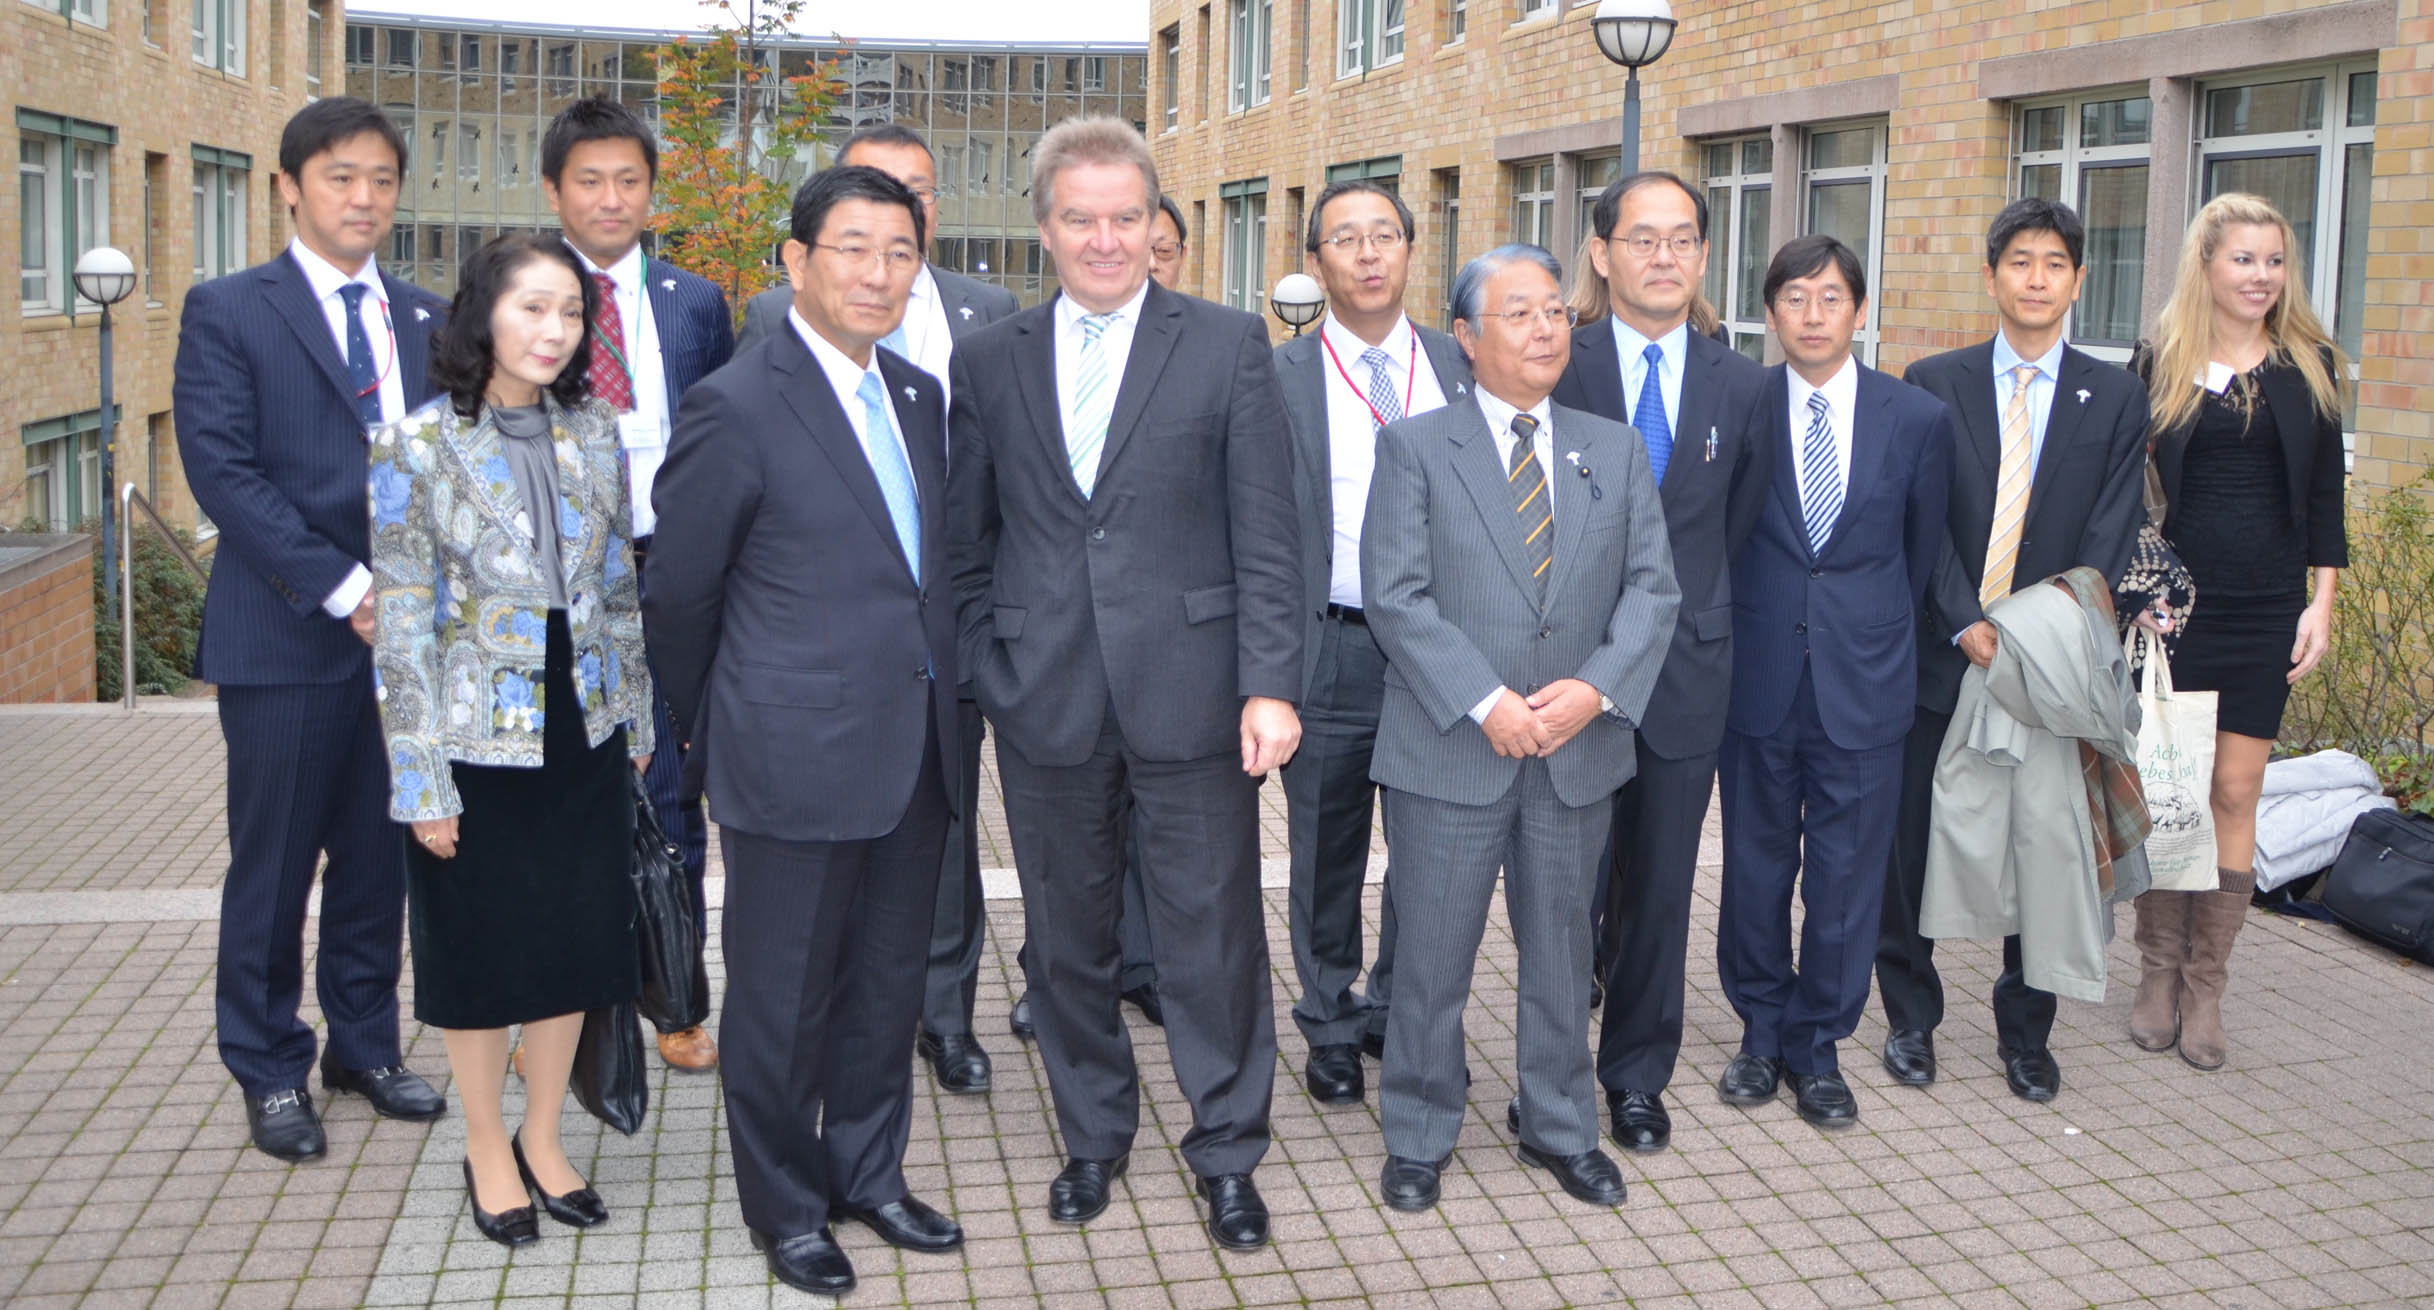 Der Gouverneur der japanischen Präfektur Gifu, Hajime Furuta, besuchte zusammen mit seiner Delegation Umweltminister Franz Untersteller. Ziel seiner Reise war es, die Zusammenarbeit im Forschungs- und Bildungssektor auszubauen.']